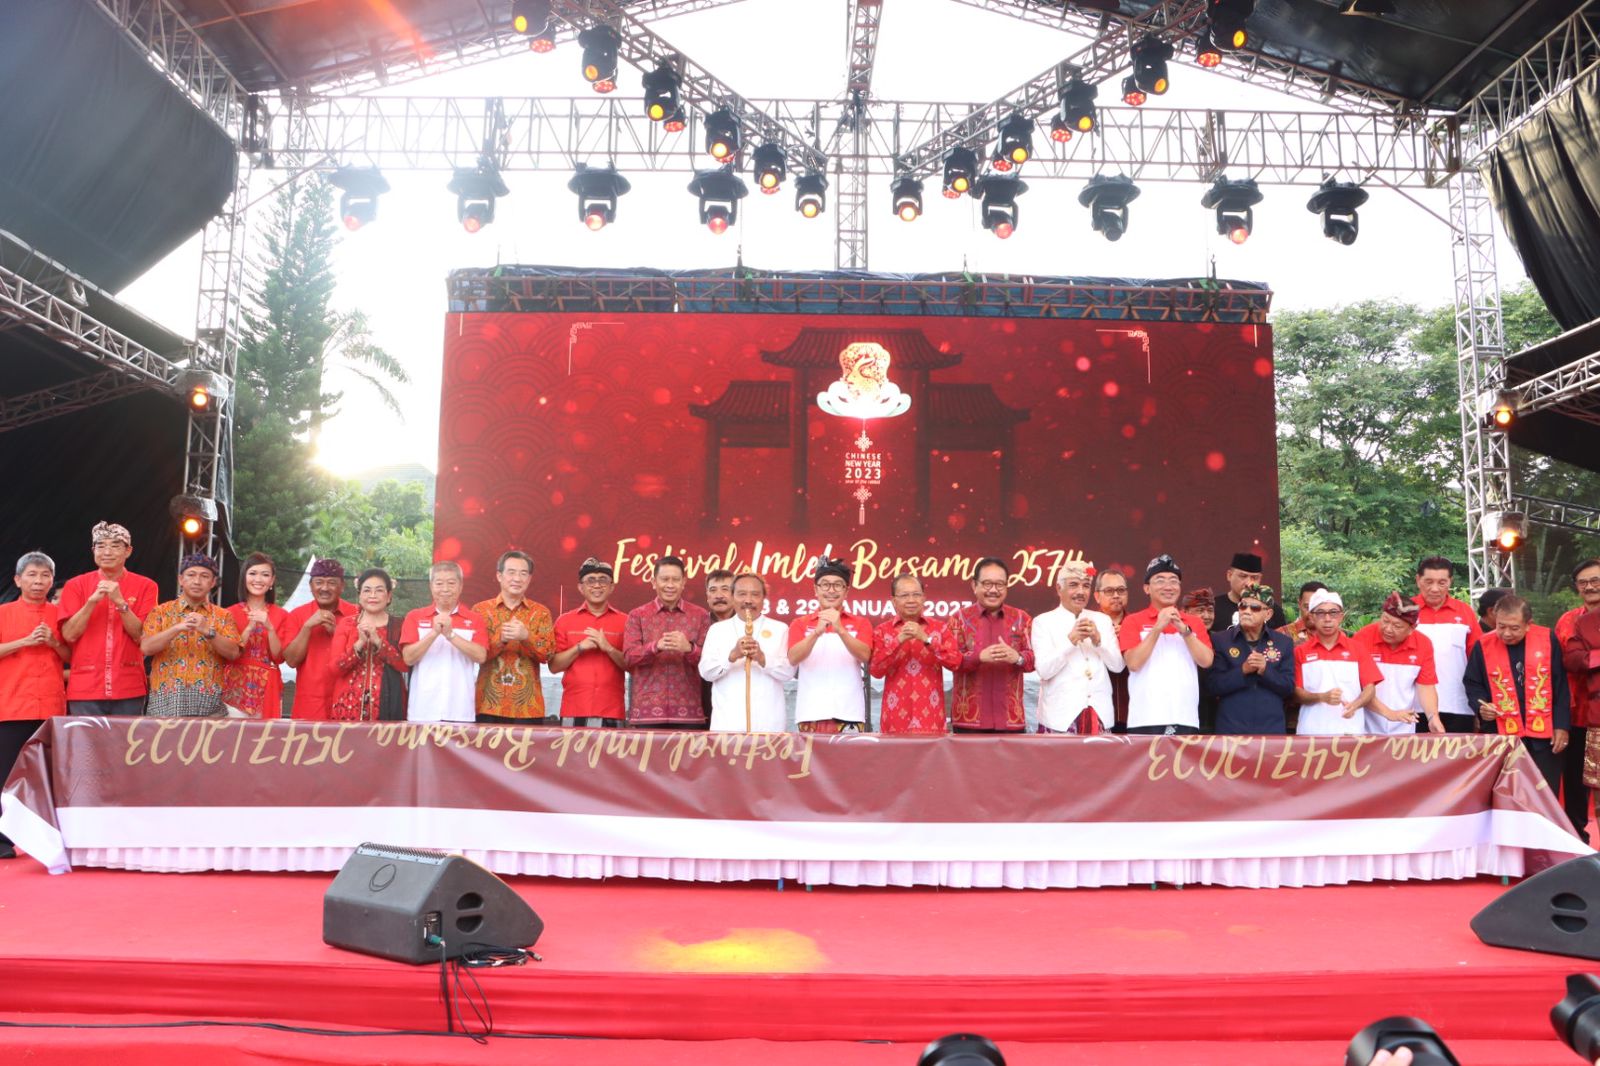 Walikota Jaya Negara Hadiri Puncak Festival Imlek Bersama 2574 Tahun 2023